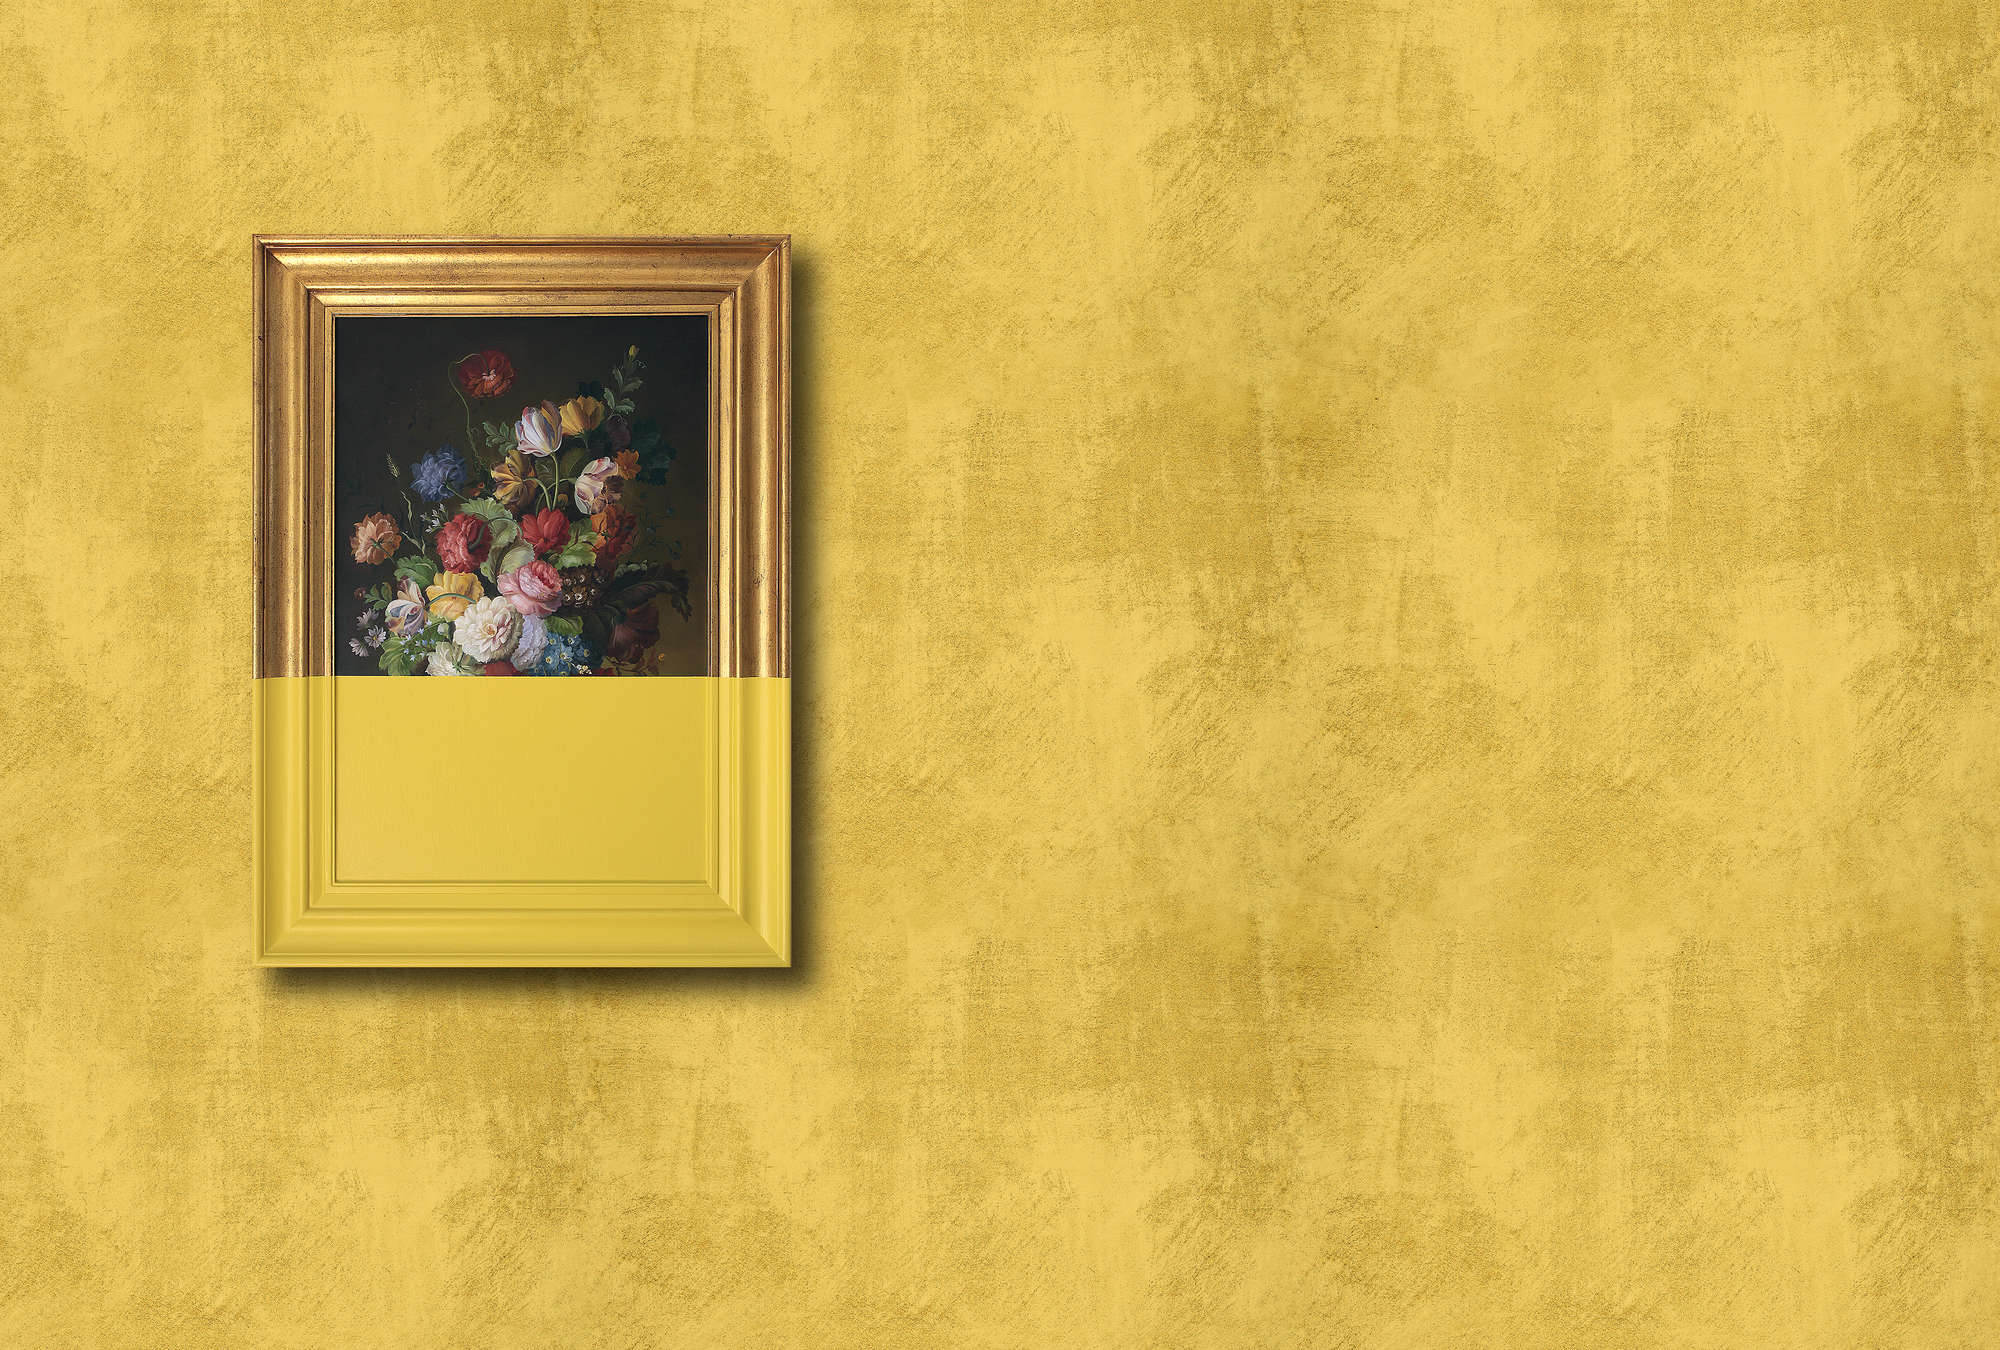             Frame 1 - Fototapete Kunst modern interpretiert in Wischputz Struktur – Gelb, Kupfer | Mattes Glattvlies
        